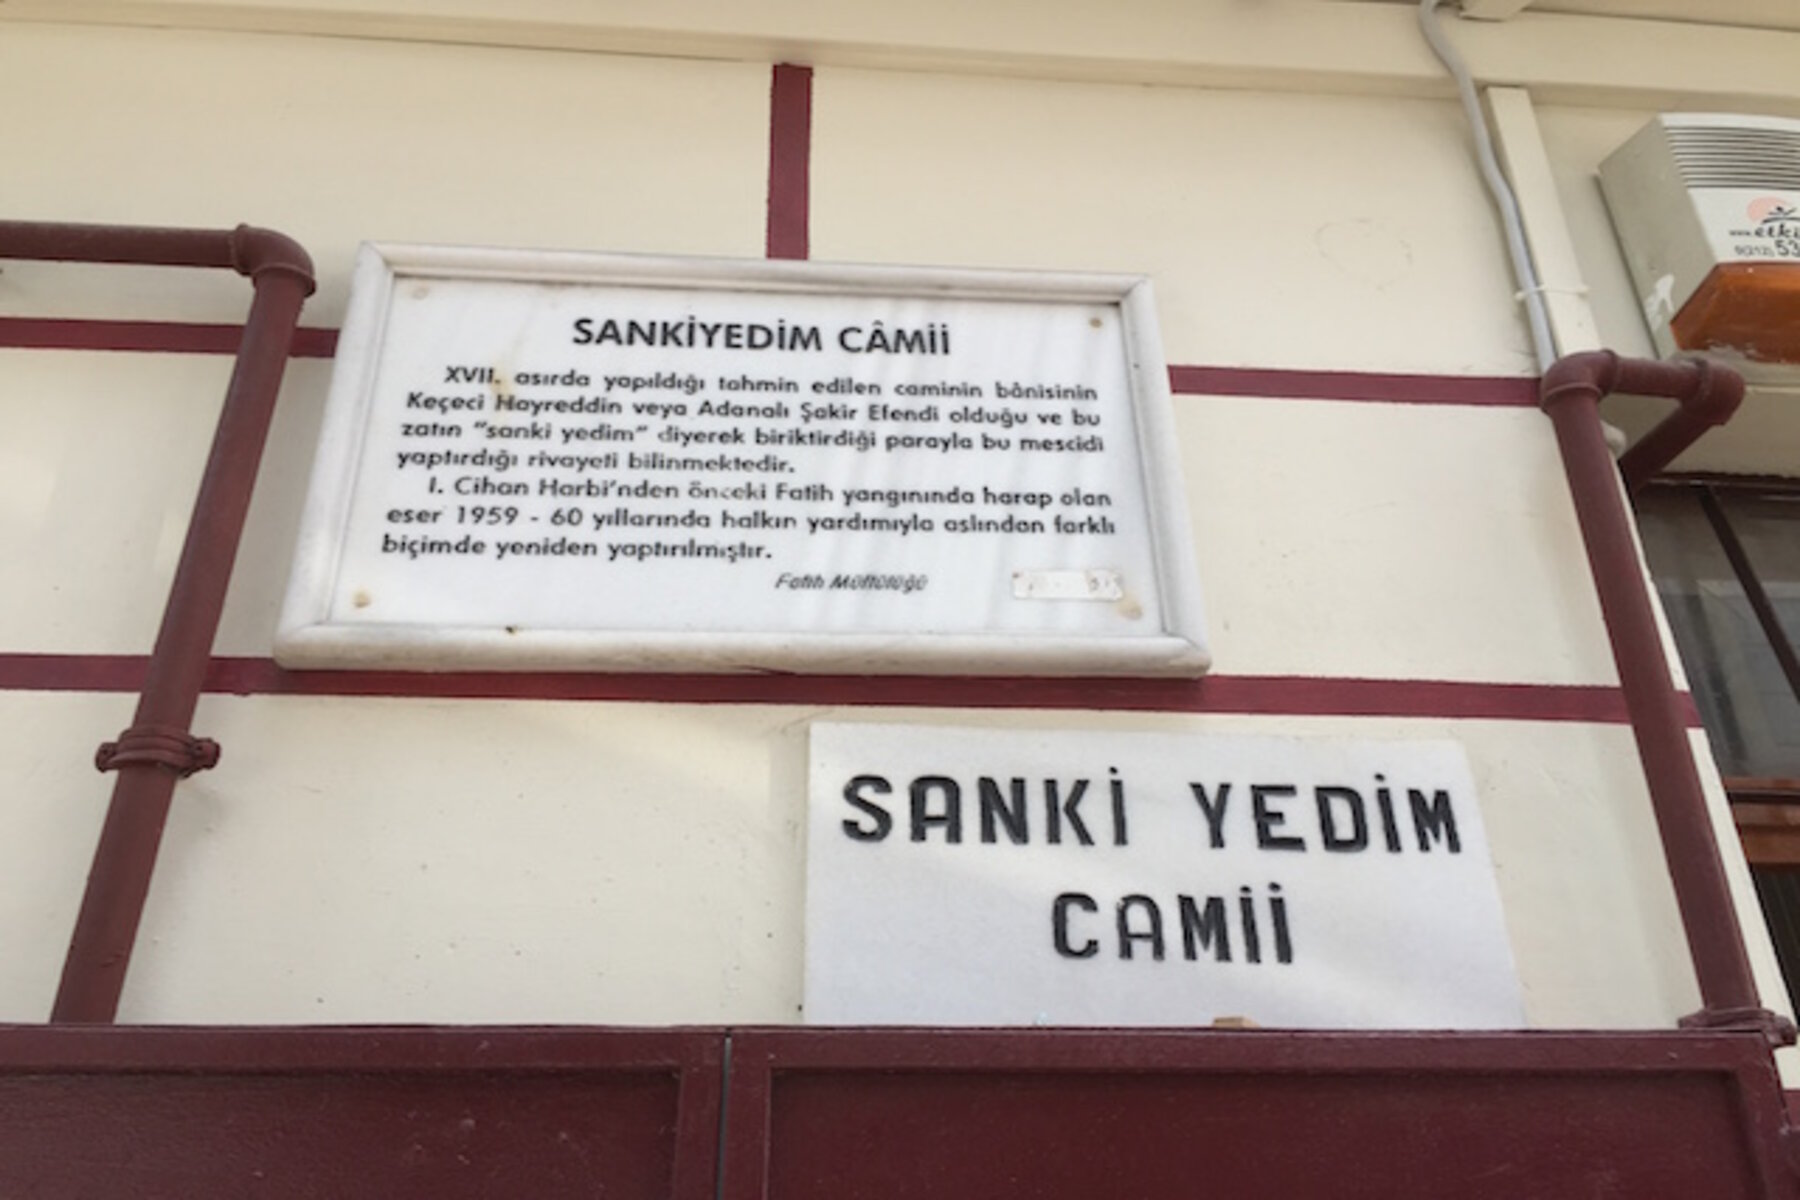 يقع الجامع في منطقة الفاتح ضمن ولاية إسطنبول وتحديداً في العنوان التالي: Zeyrek, Kırbacı Sk. No:45, 34083 Fatih/İstanbul.